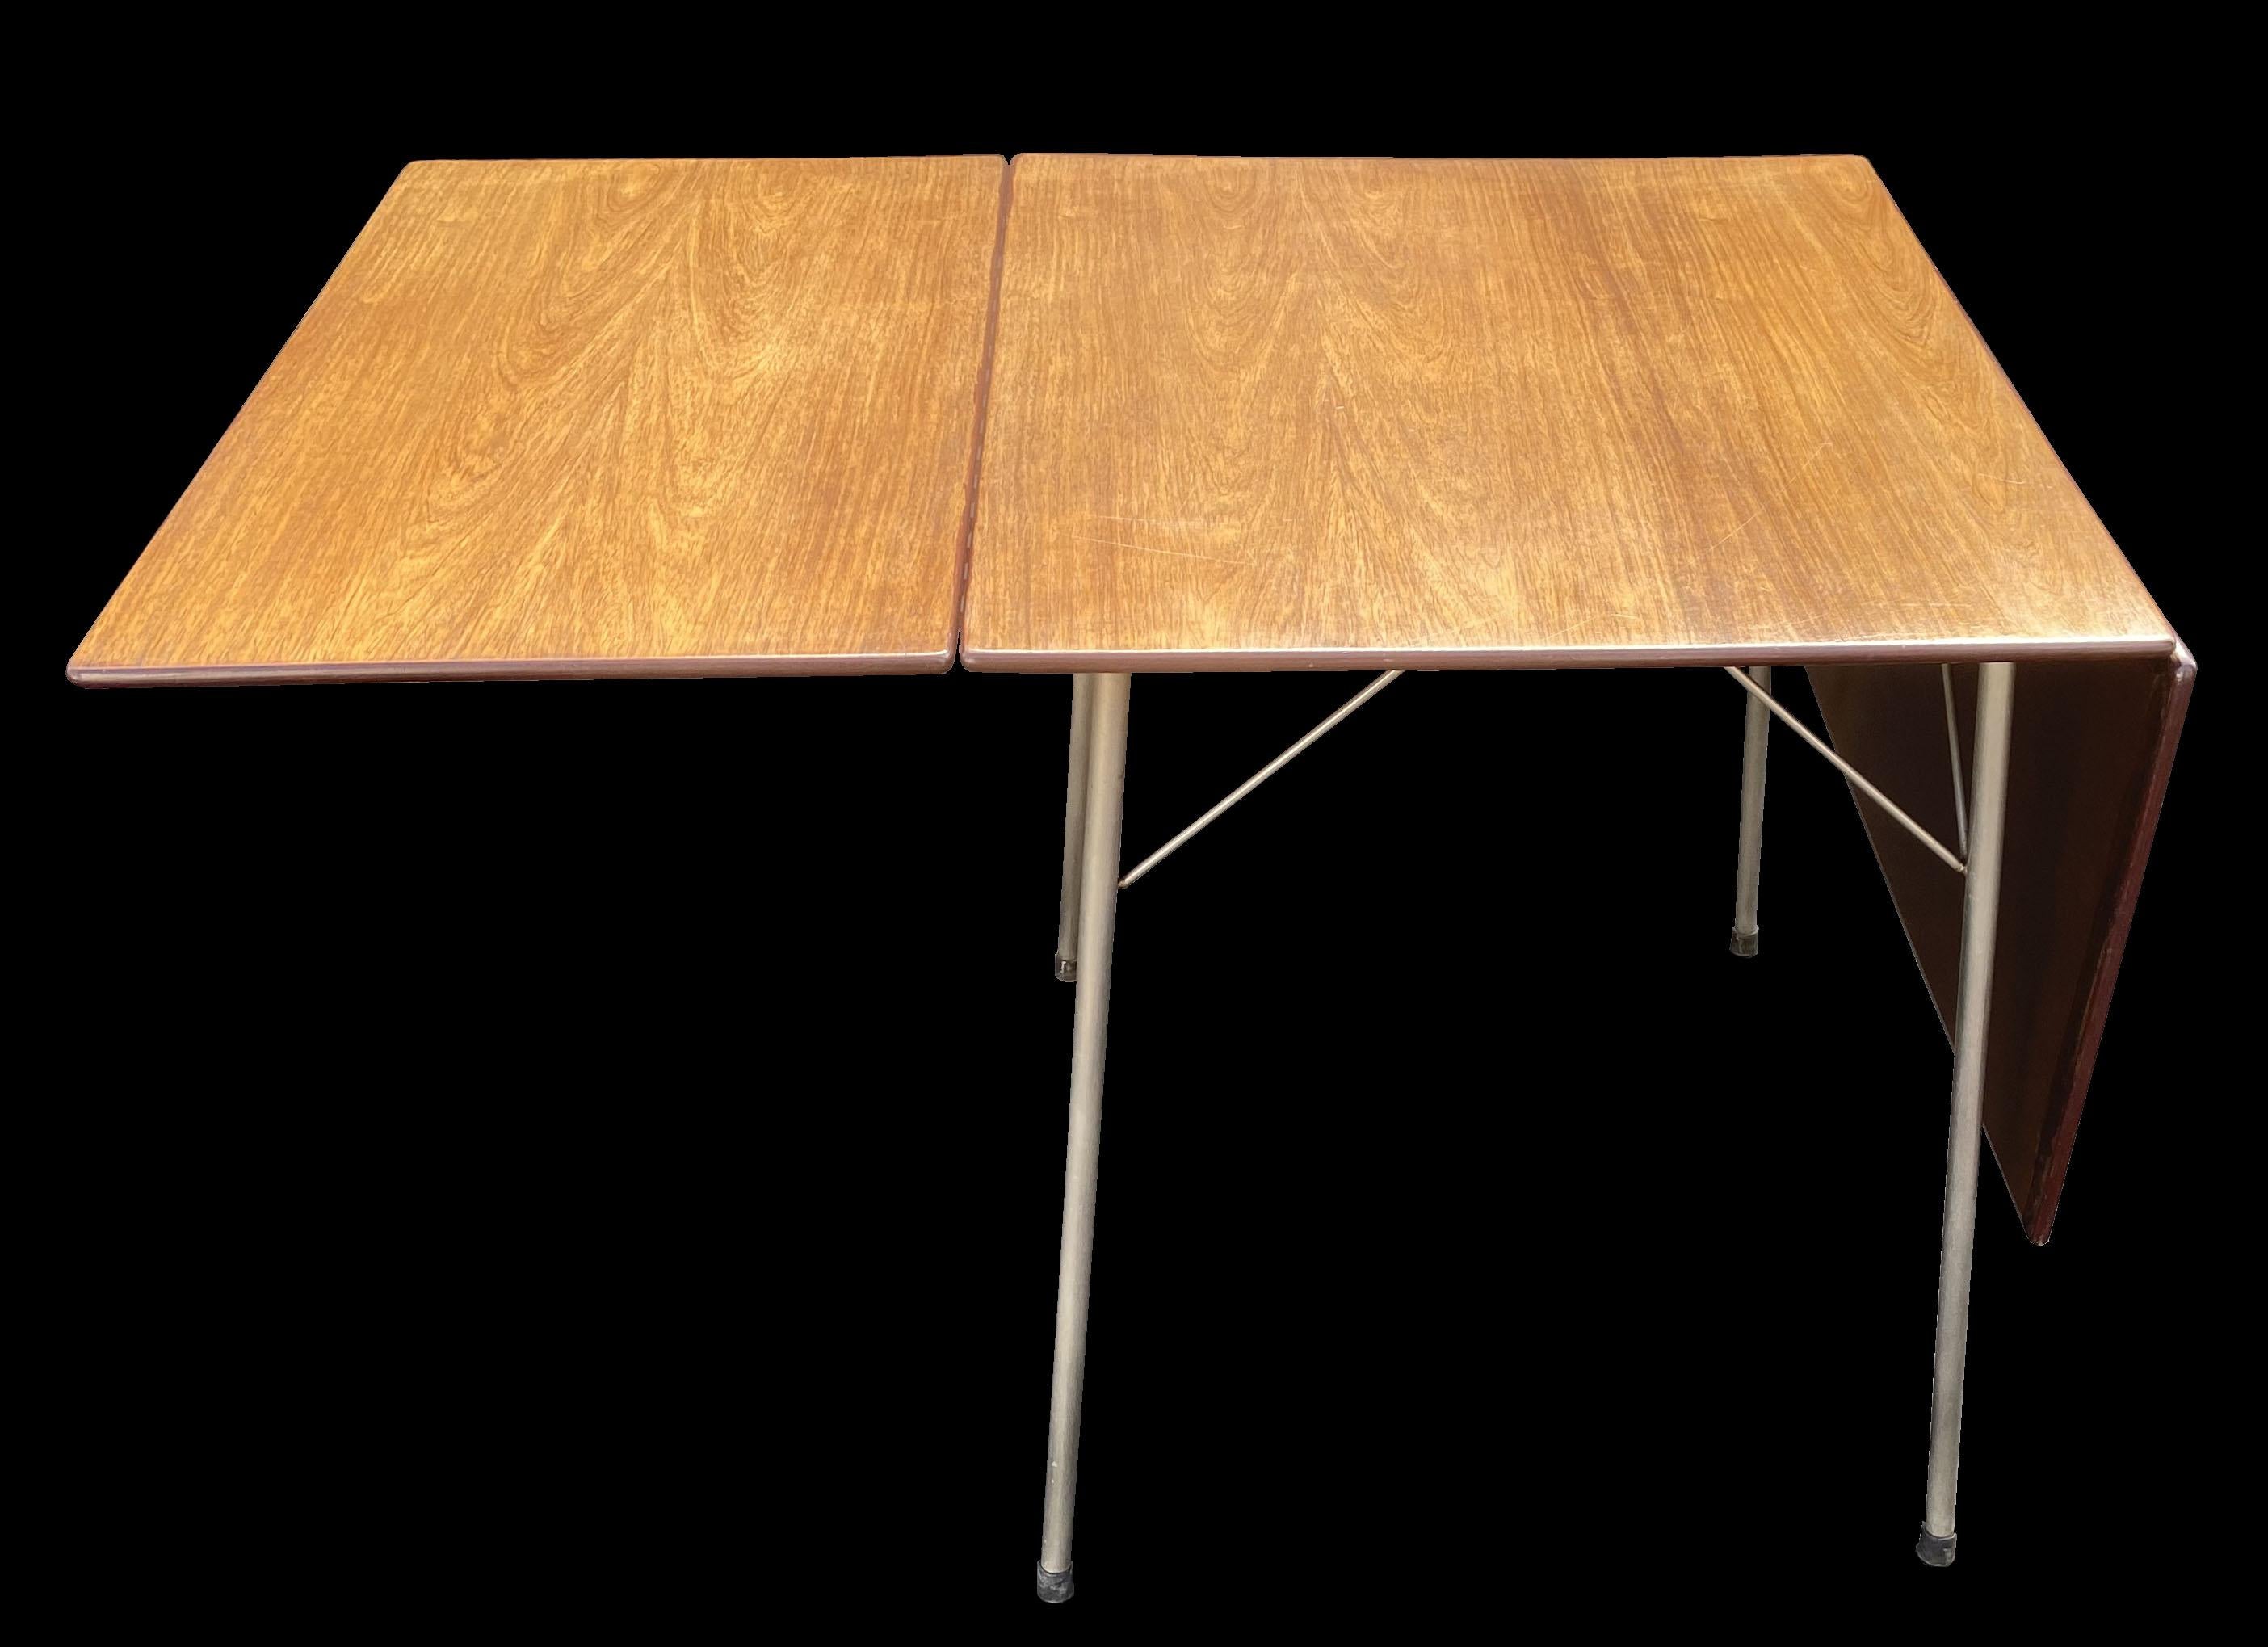 20th Century 'Ant' Table Model 3601 by Arne Jacobsen for Fritz Hansen For Sale